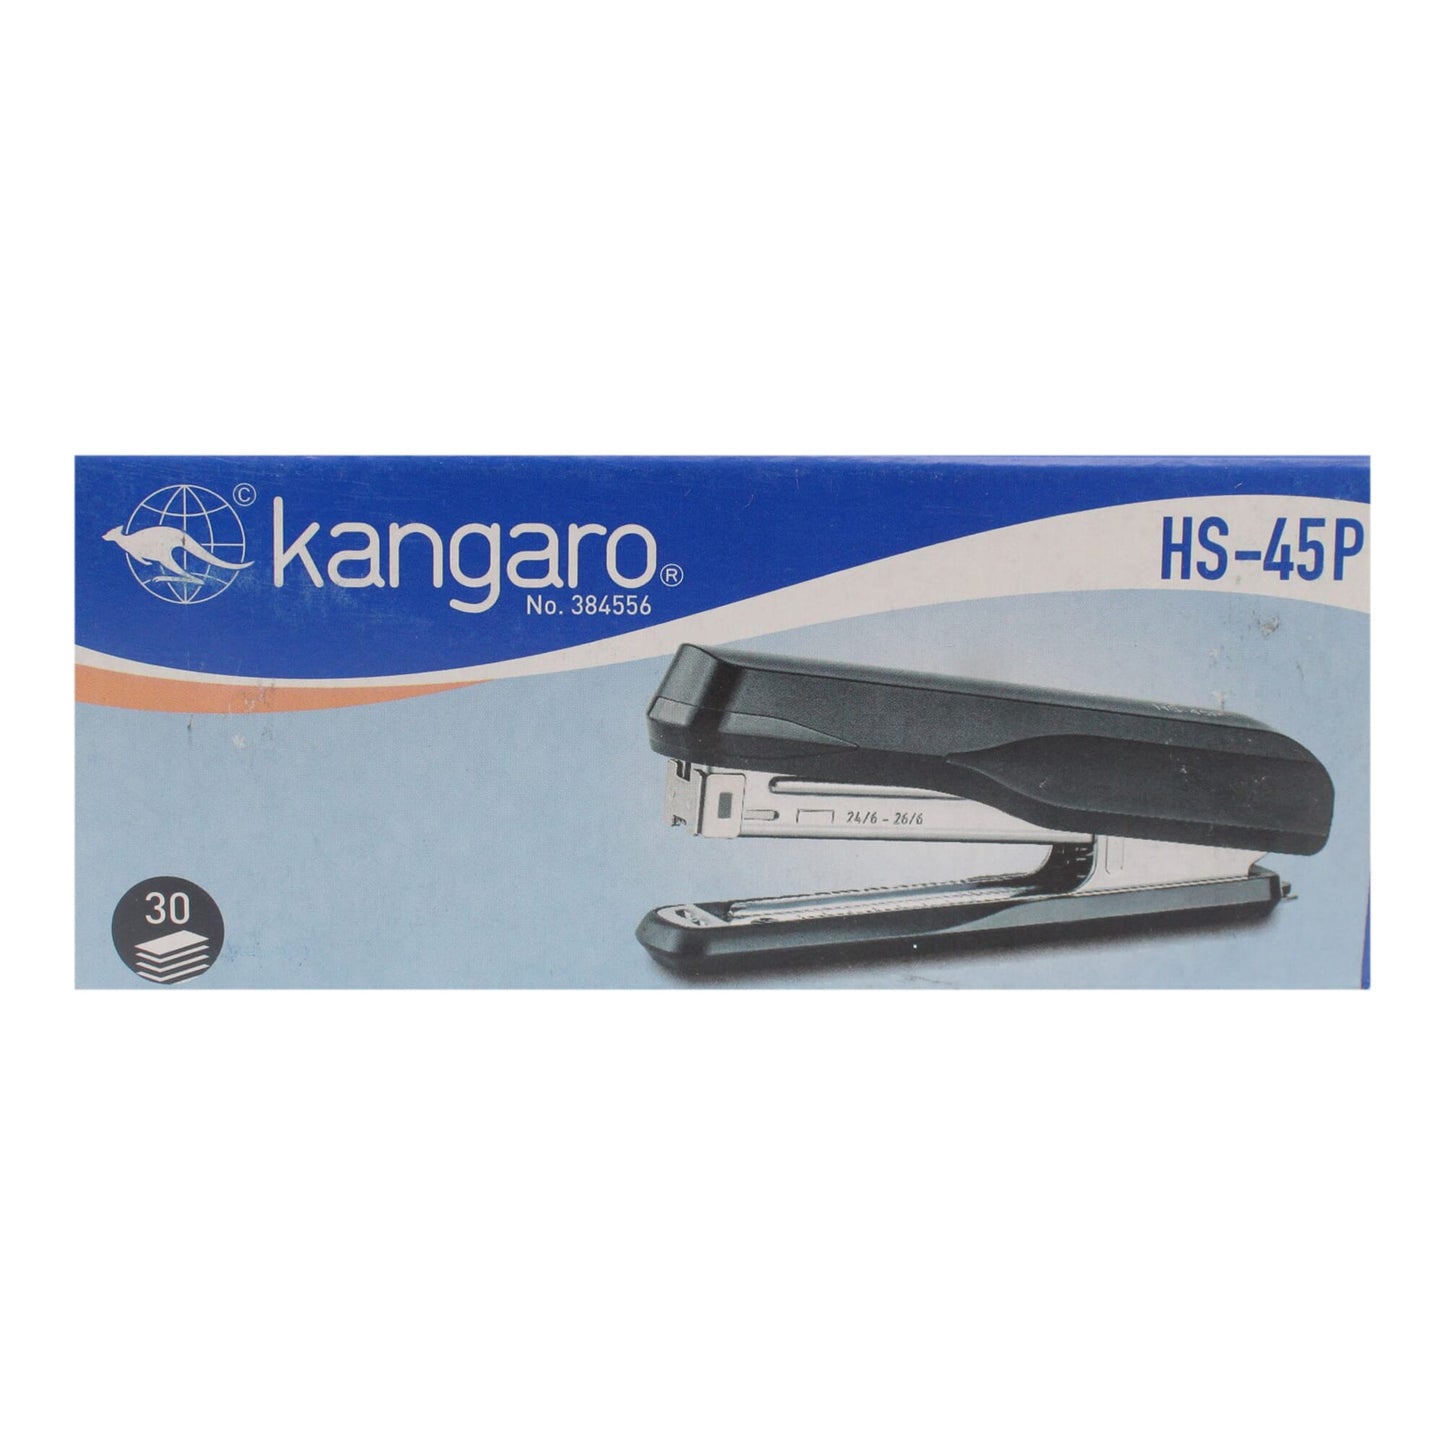 Stapler - Kangaro HS- 45P